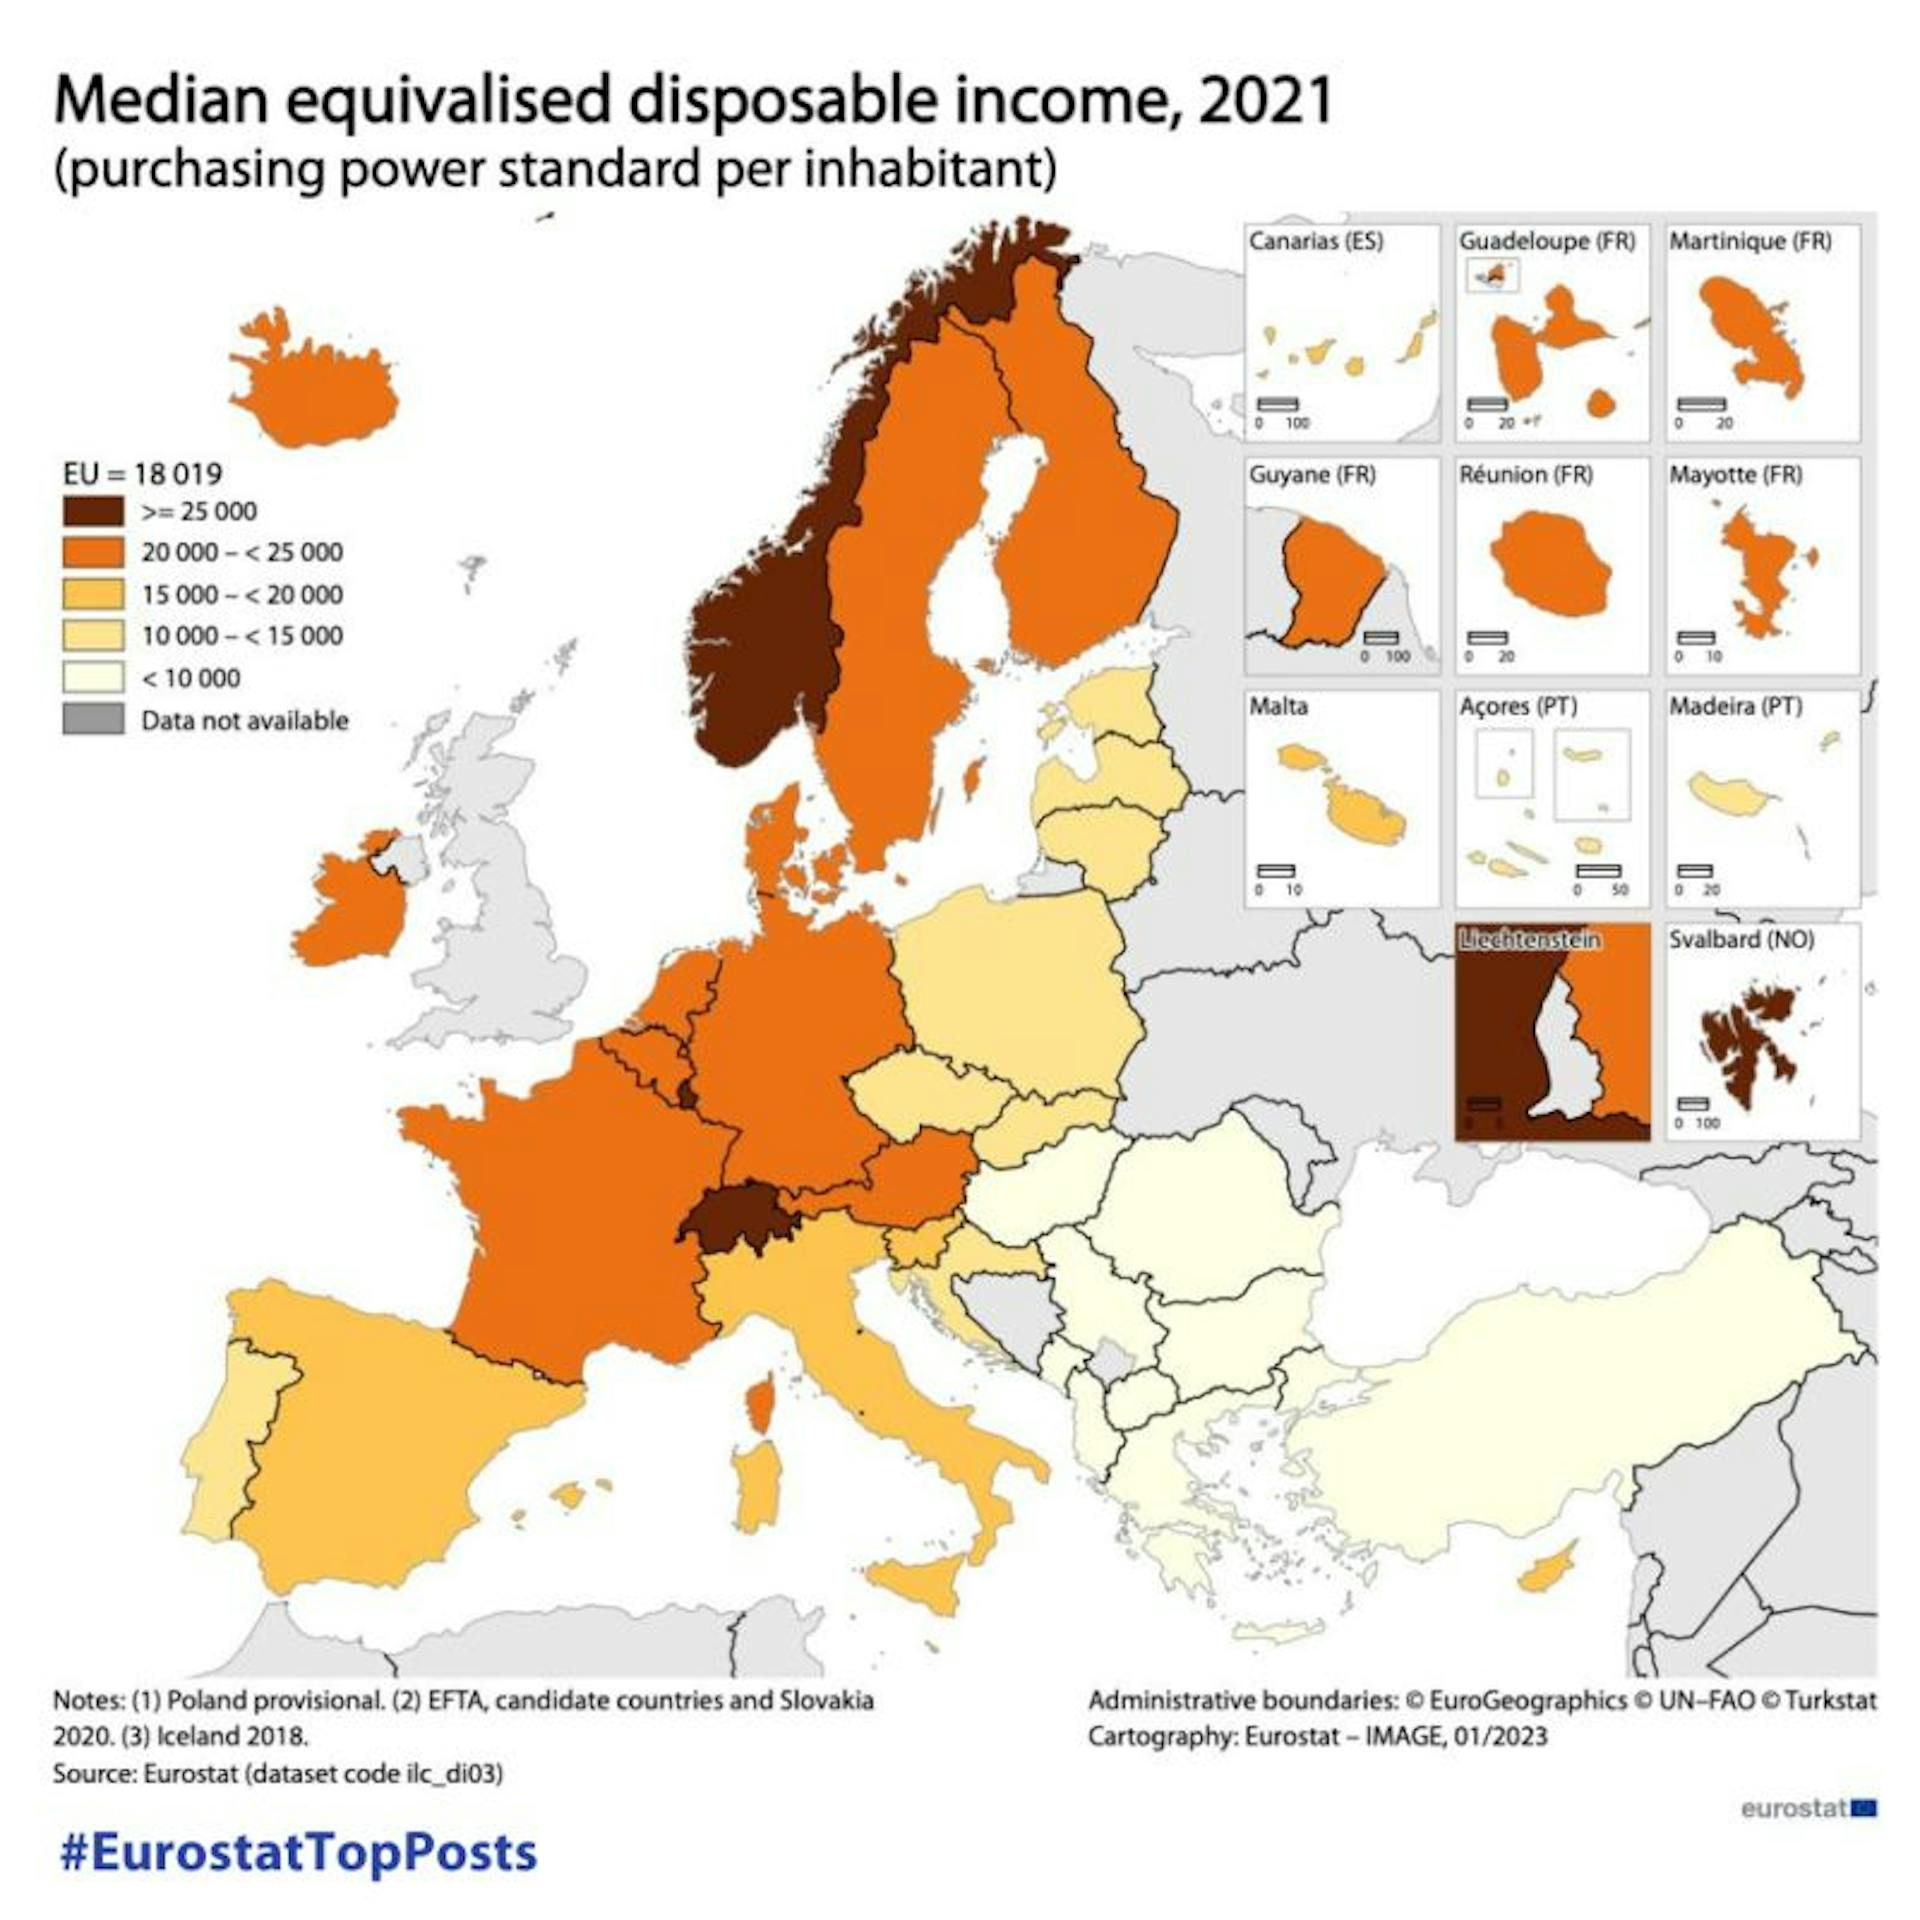 En 2021, la renta disponible mediana fue de 18 019 PPS (estándar de poder adquisitivo) por habitante en la UE.